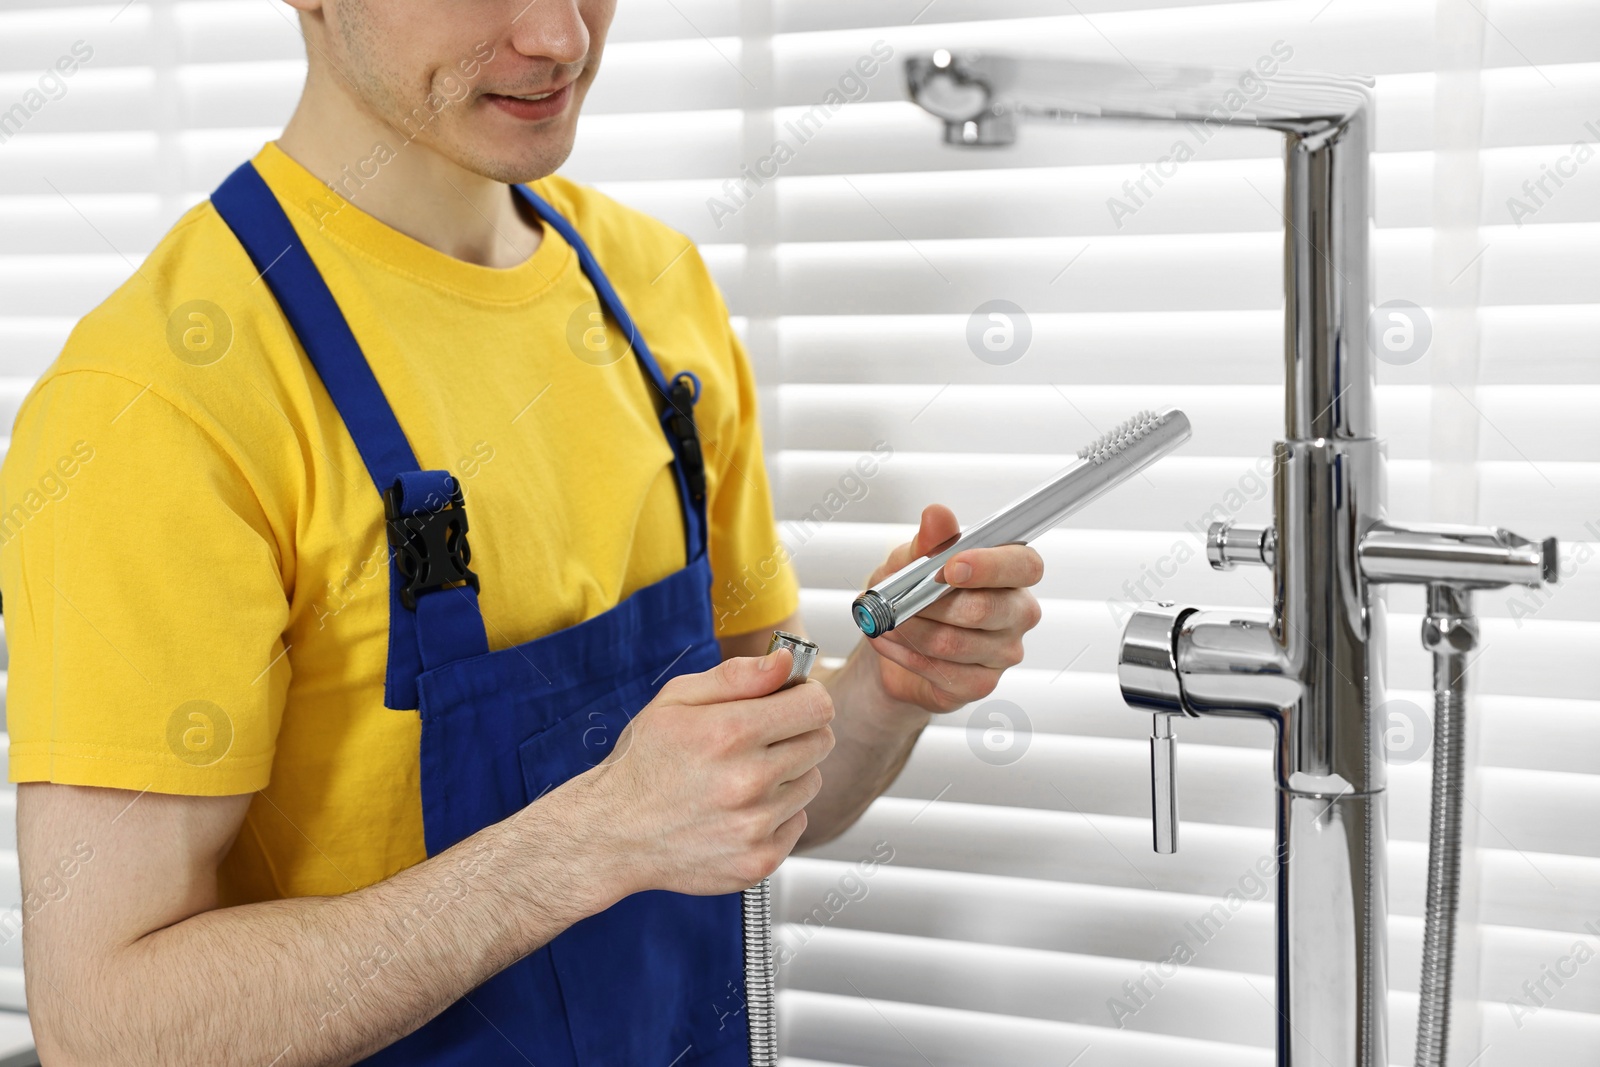 Photo of Plumber repairing metal faucet in bathroom, closeup